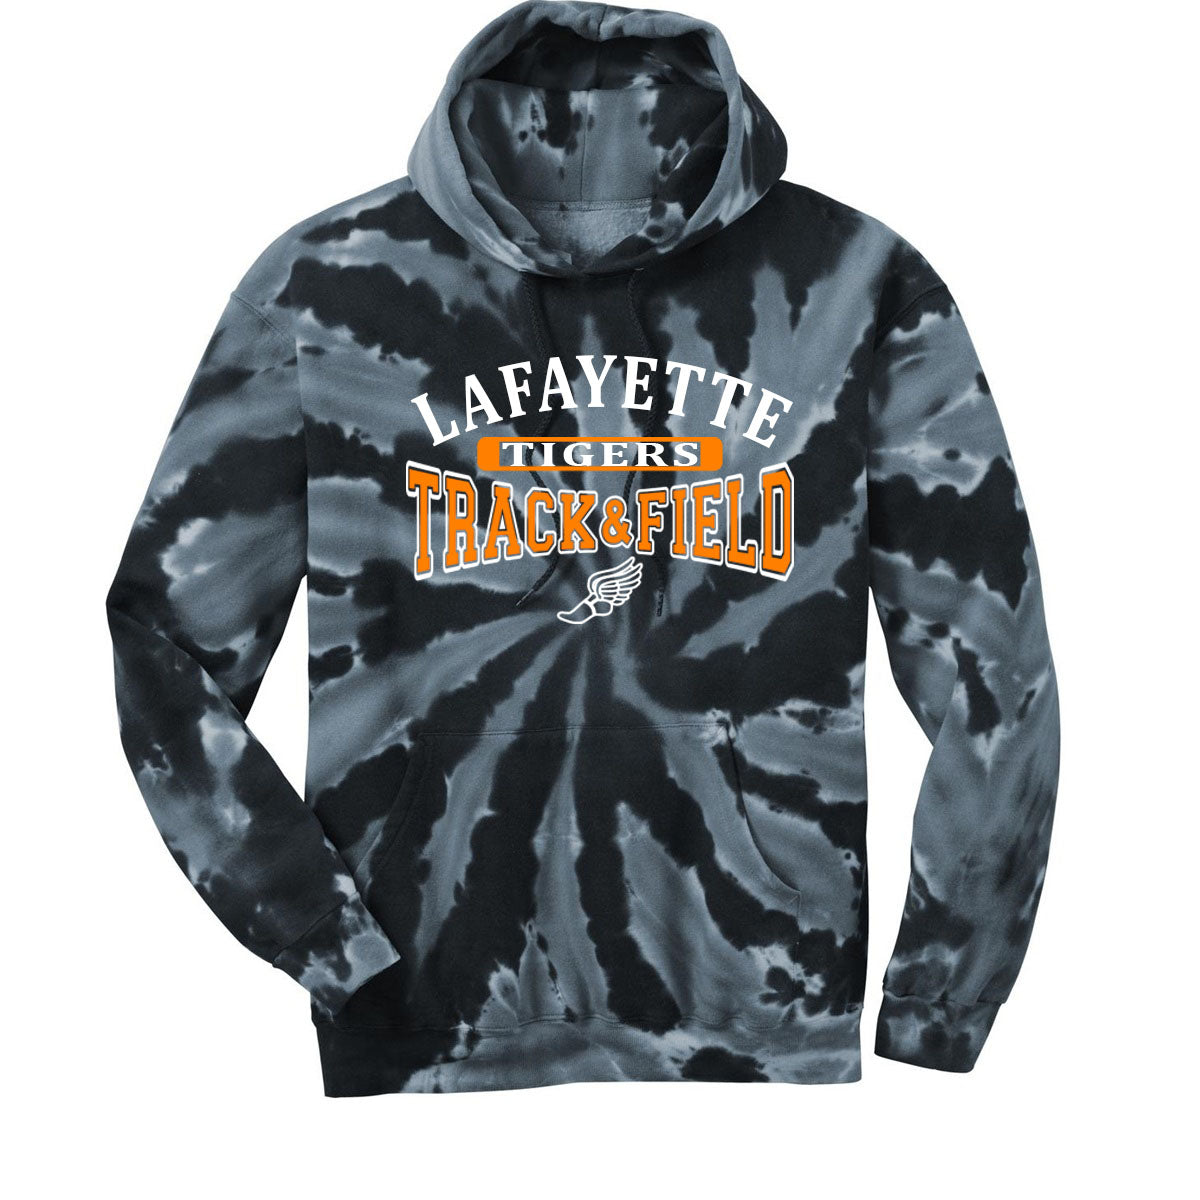 Lafayette Track Tie-Dye Hooded Sweatshirt Design 2